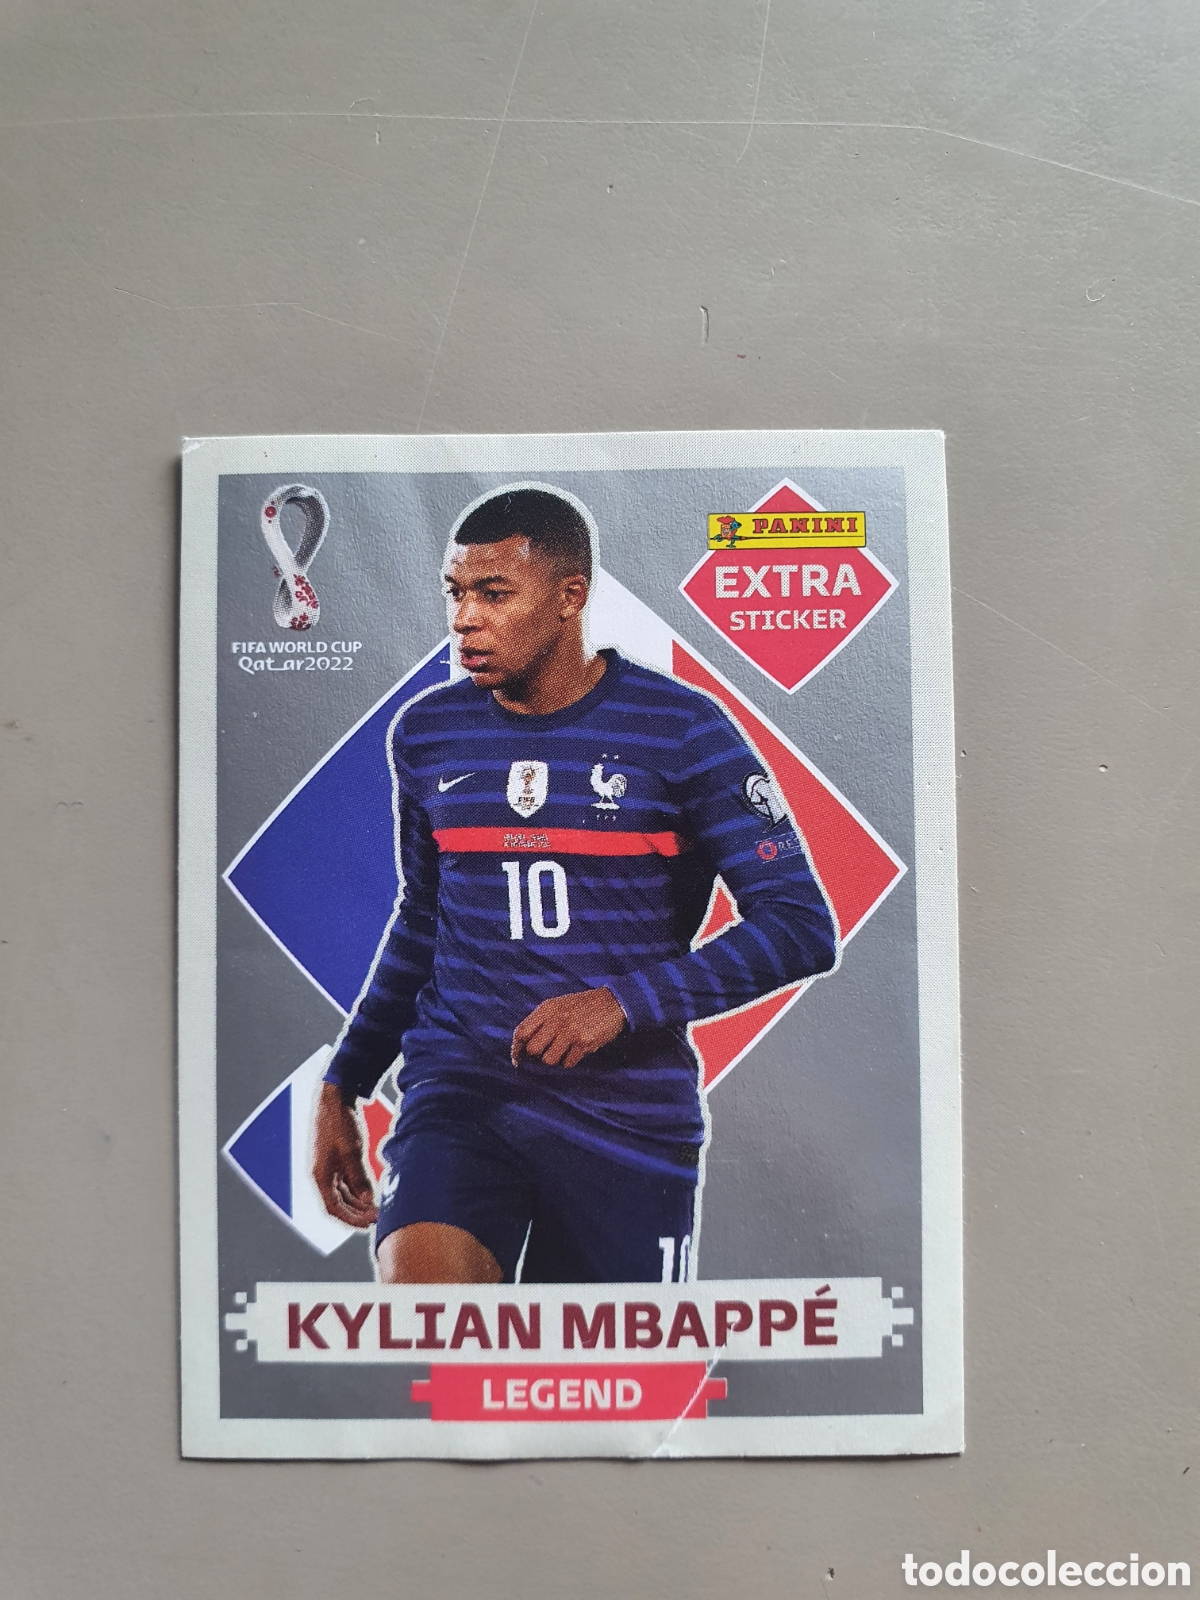 Sticker Mbappe Legend Silver Figurinha Copa 2022